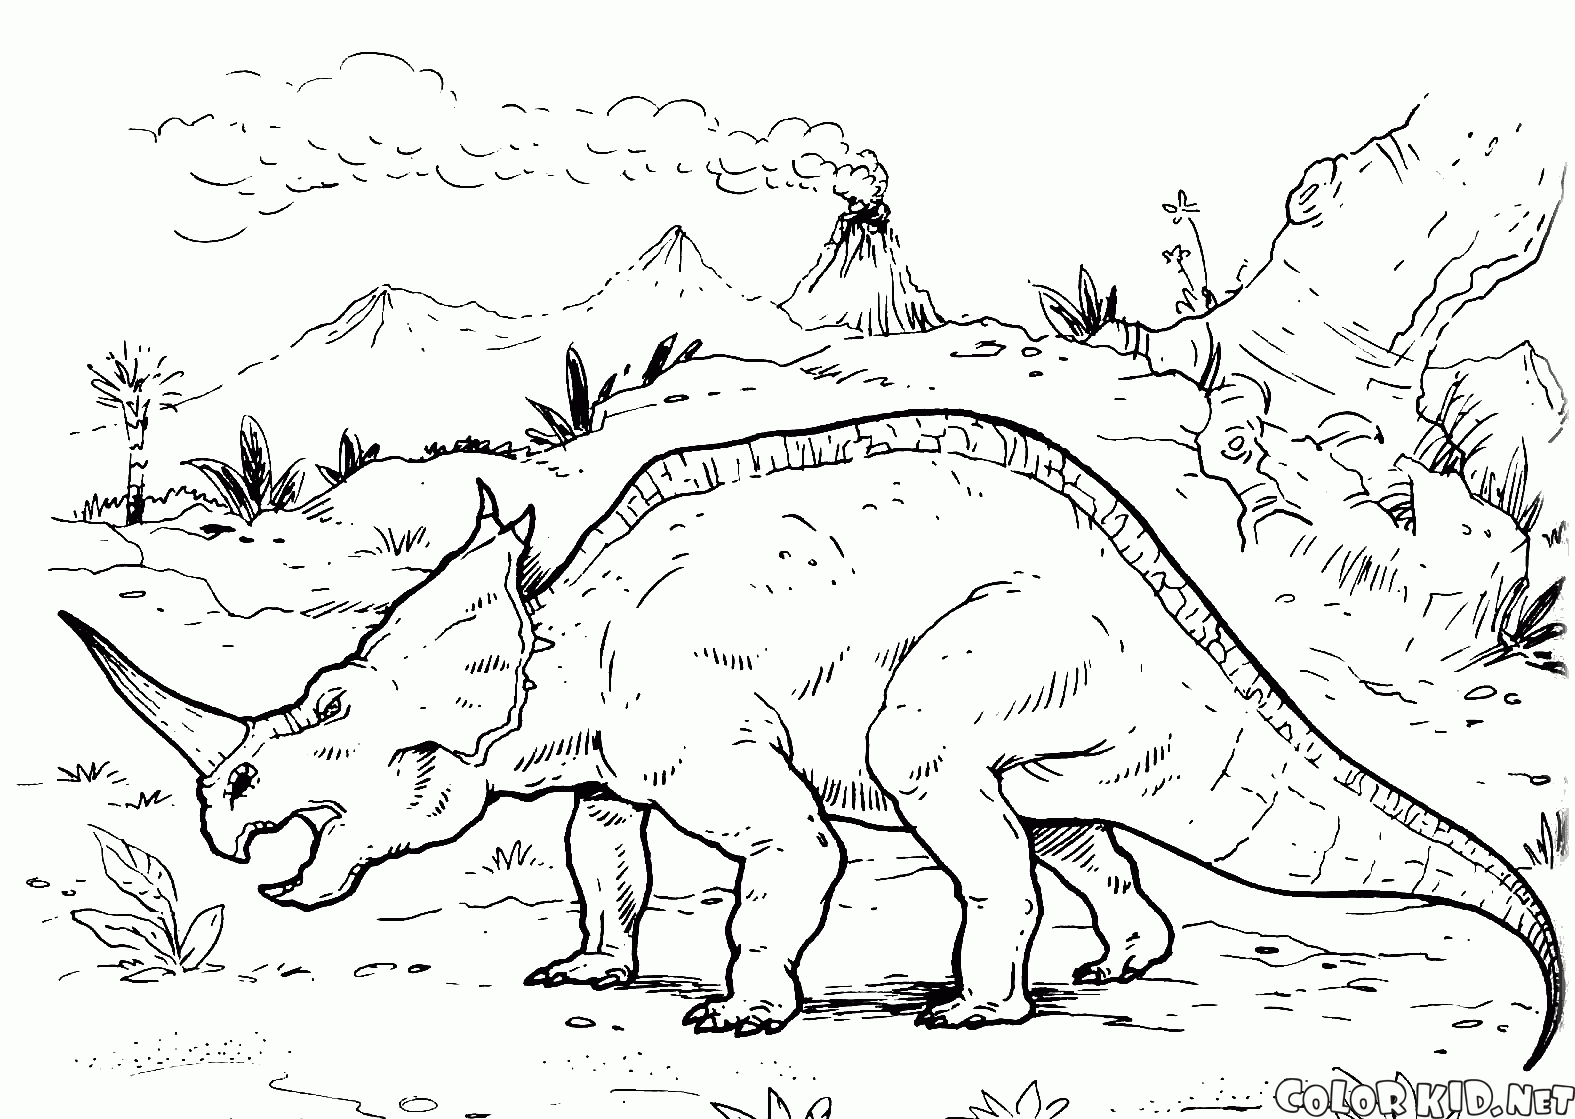 Centrosaurus viaggia il mondo